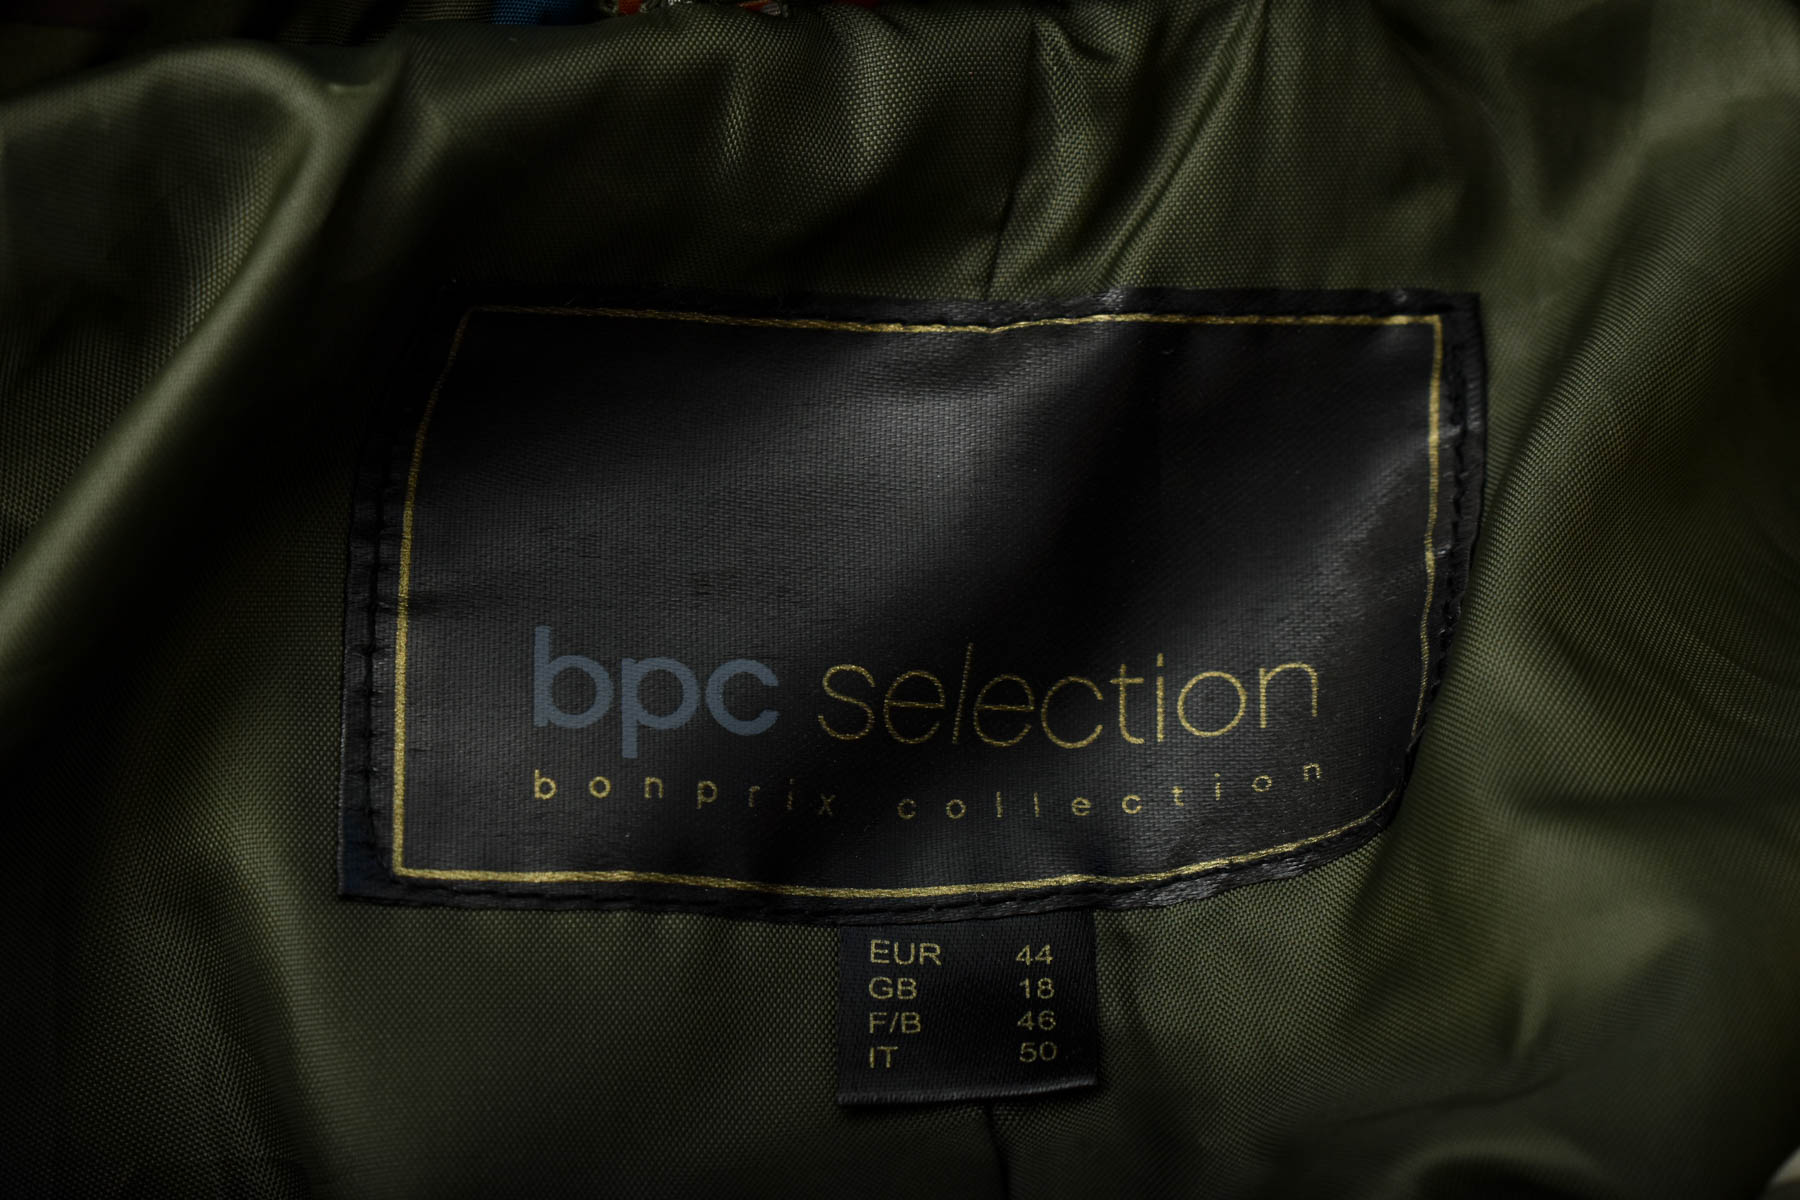 Γυναικείο μπουφάν - Bpc selection bonprix collection - 2